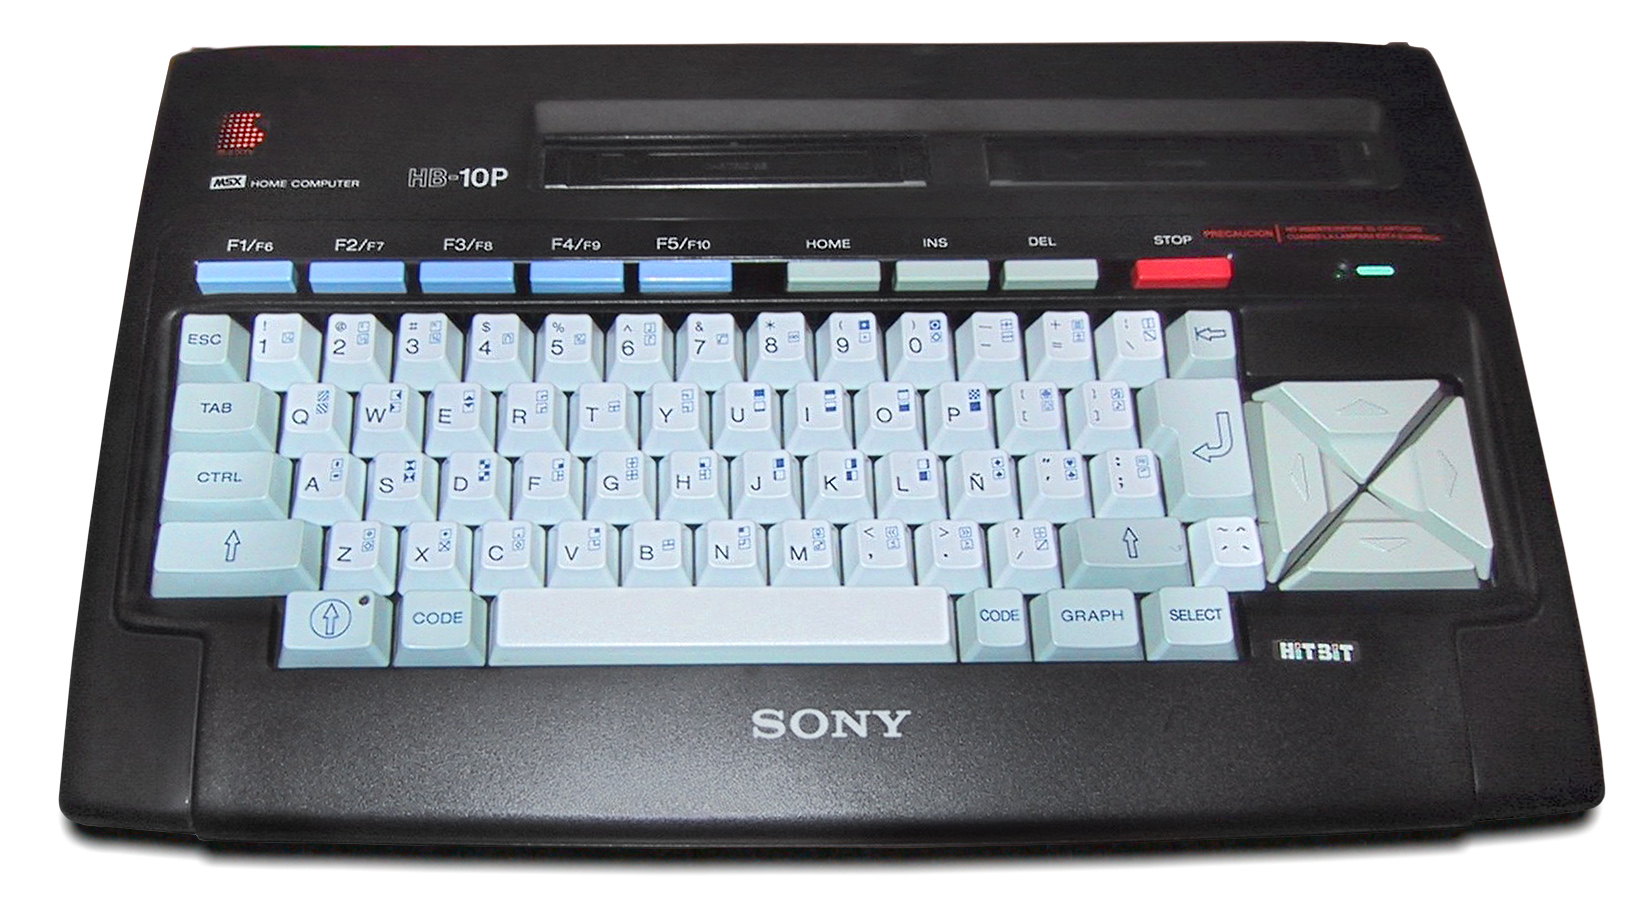 Sony MSX HitBit-10-P / HB-10P model.